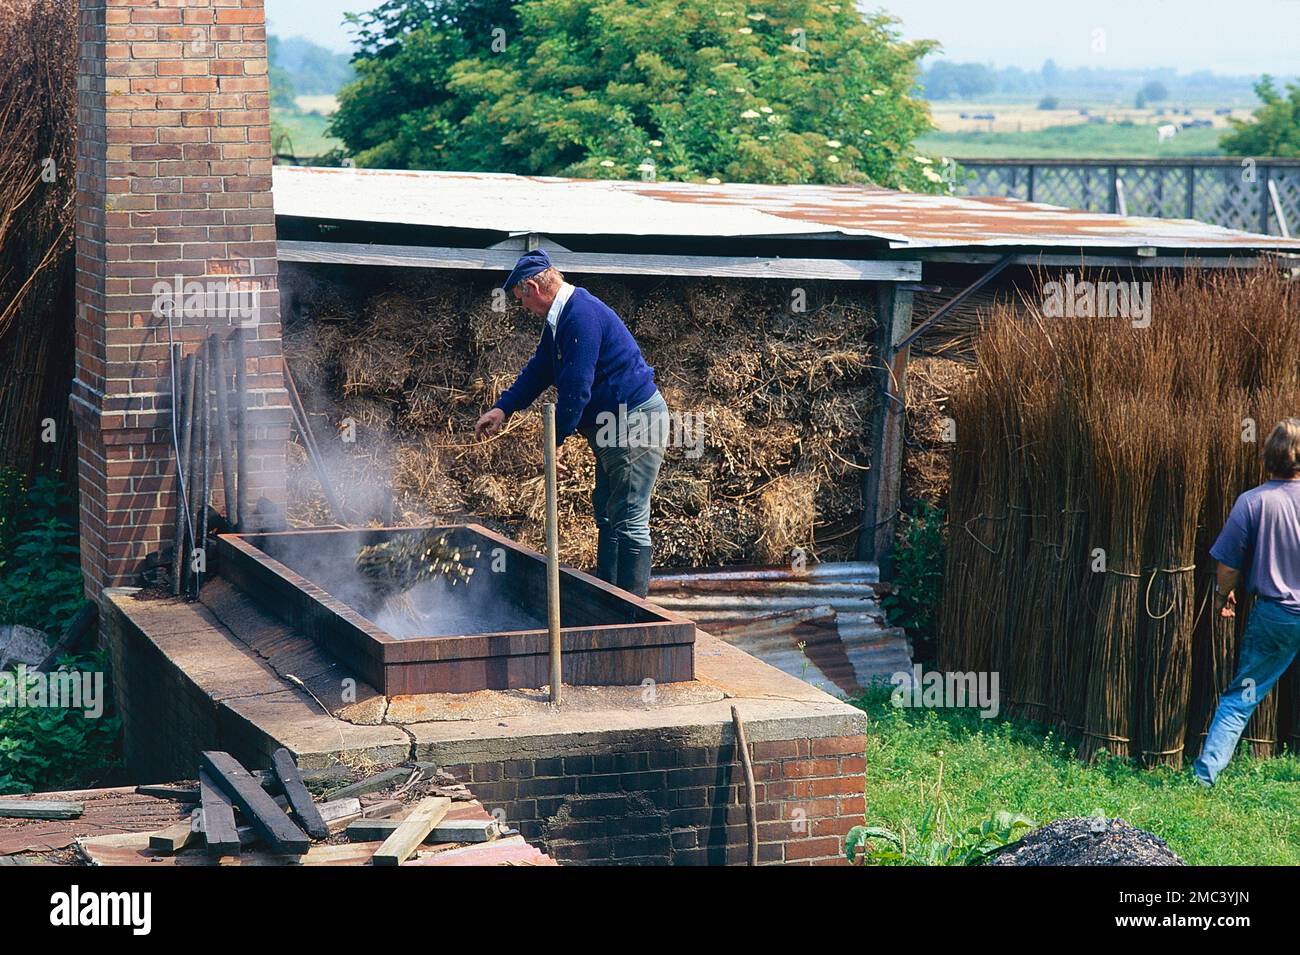 Withie bouillant dans l'industrie de la culture du saule pour la fabrication de paniers, à Gadsby and son, Somerset, Royaume-Uni Banque D'Images